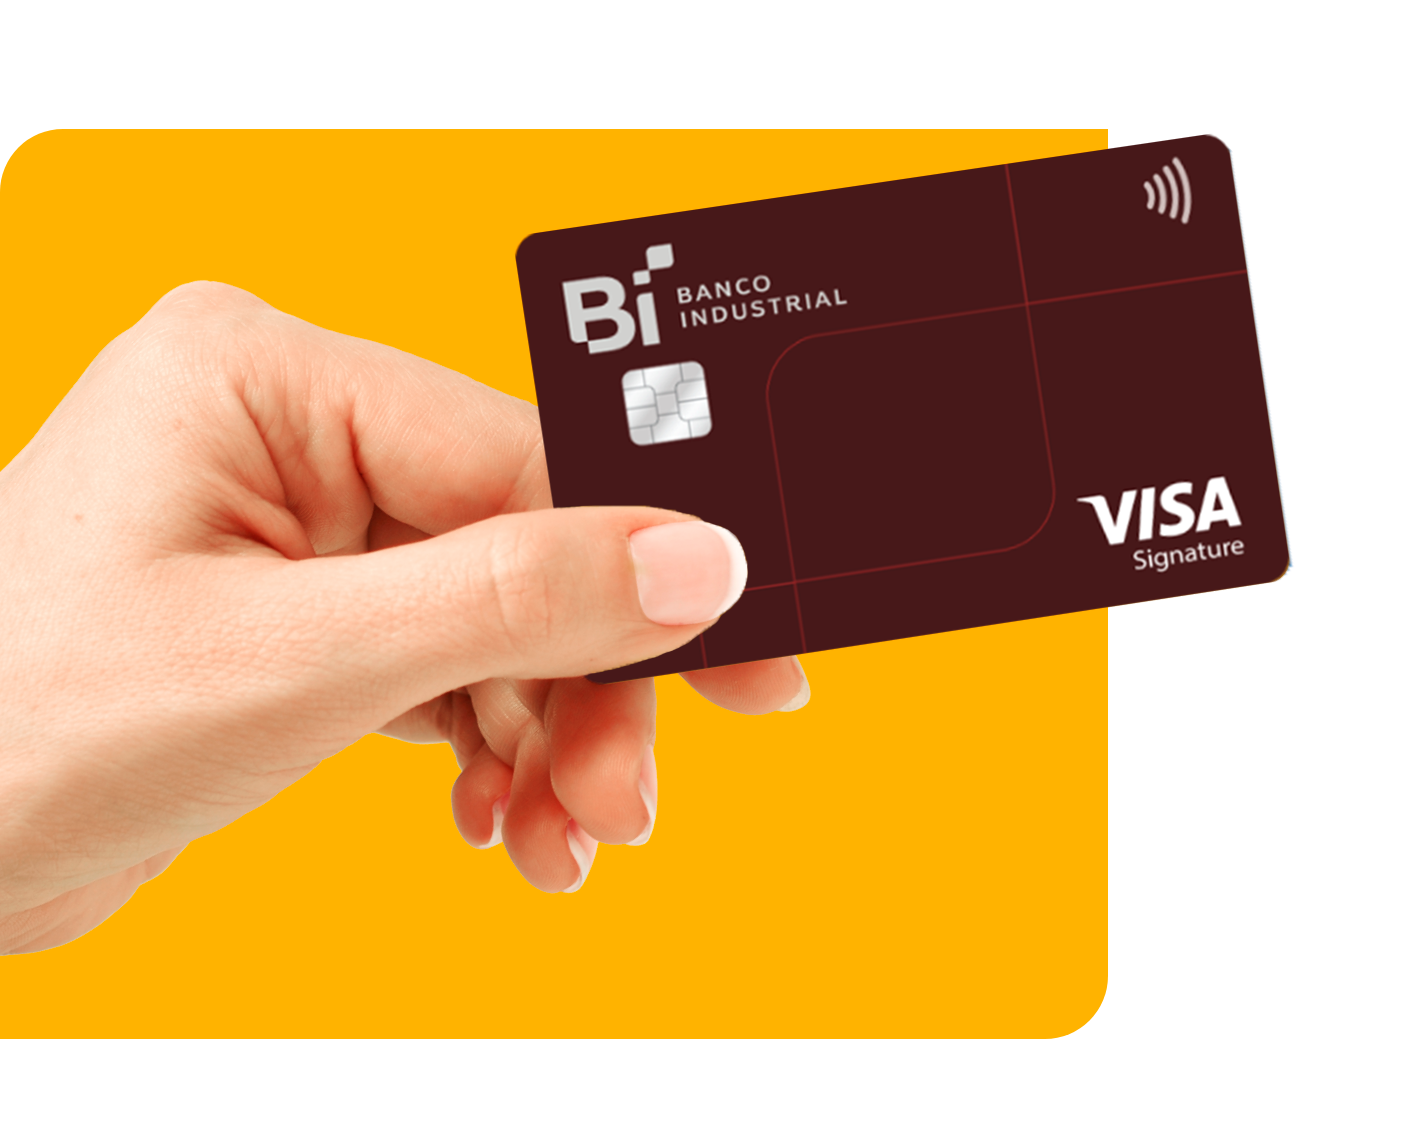 mano_tarjetas_personales_credito_visa_signature